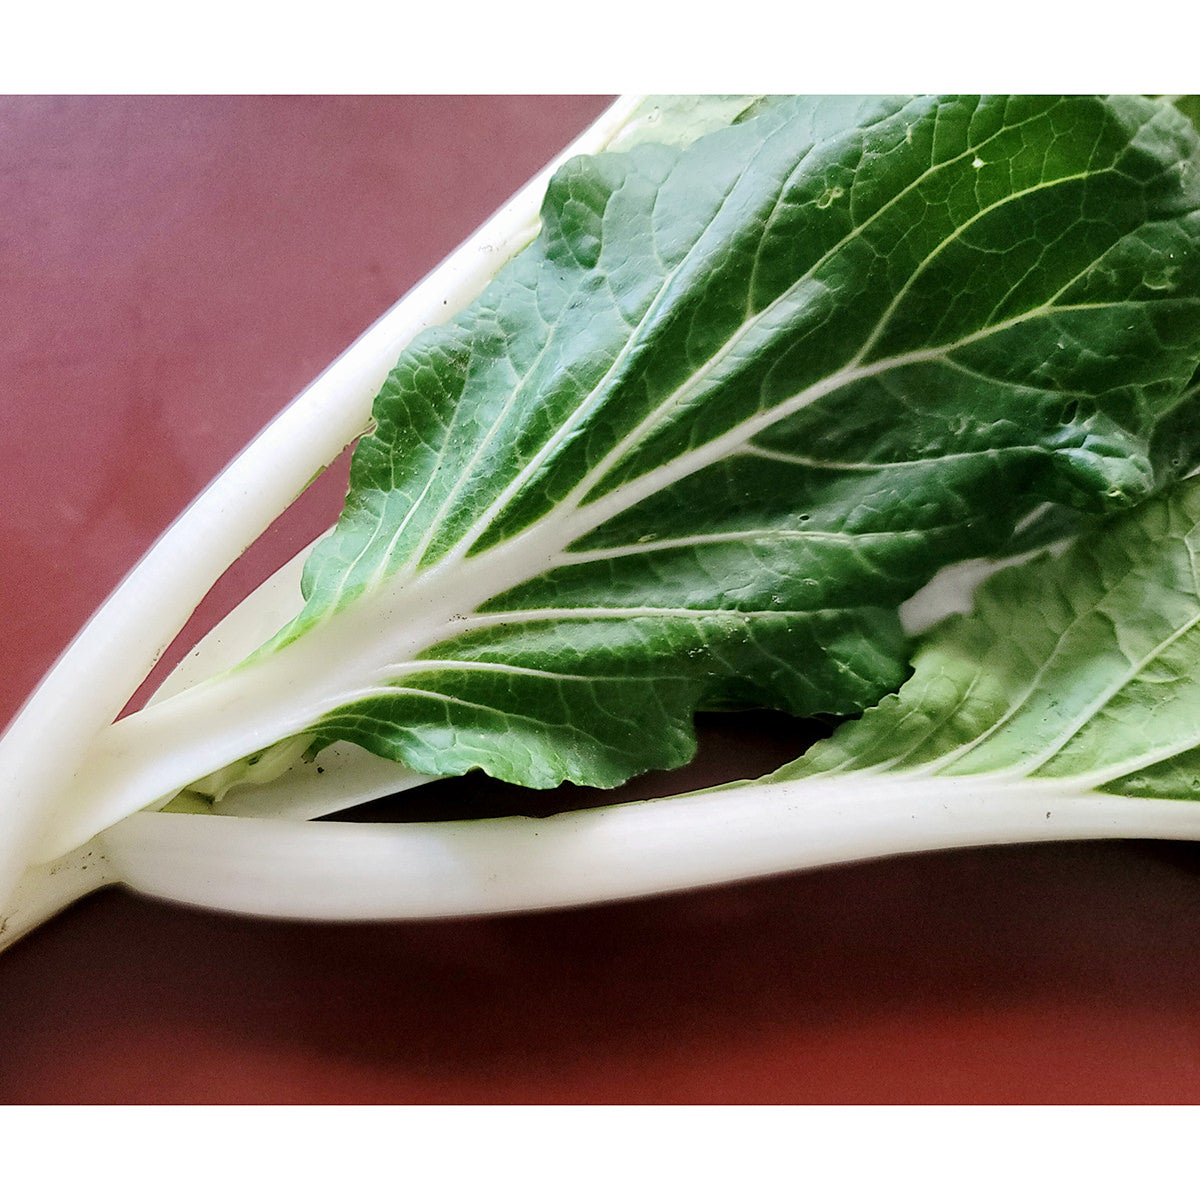 Certified Organic White Stem Pak Choi Cabbage Seeds